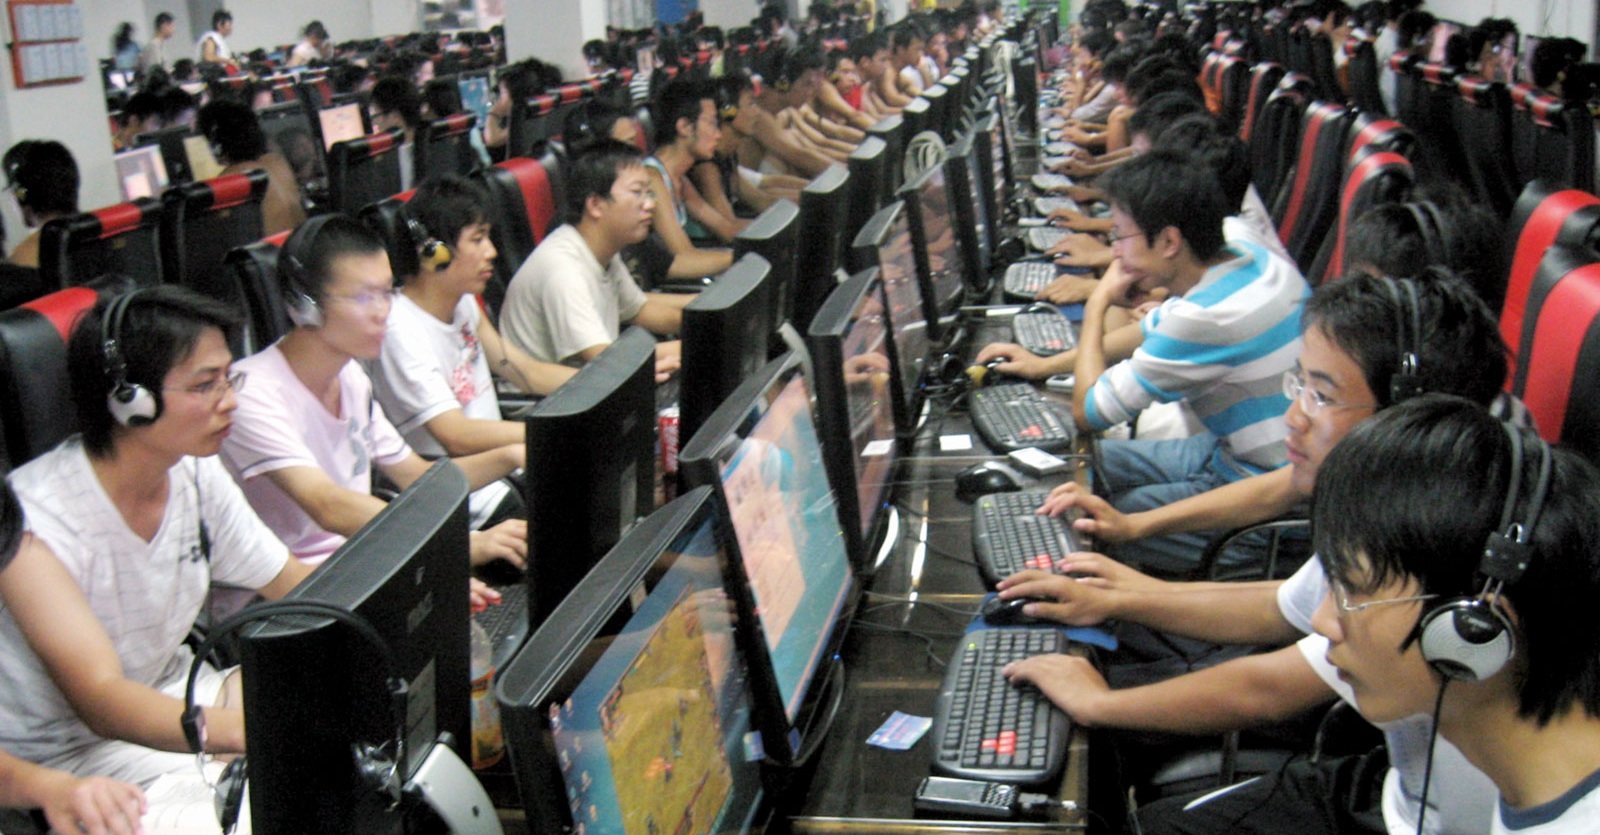 Kina har bestemt at alle nettbrukere må registrere seg med fullt navn.